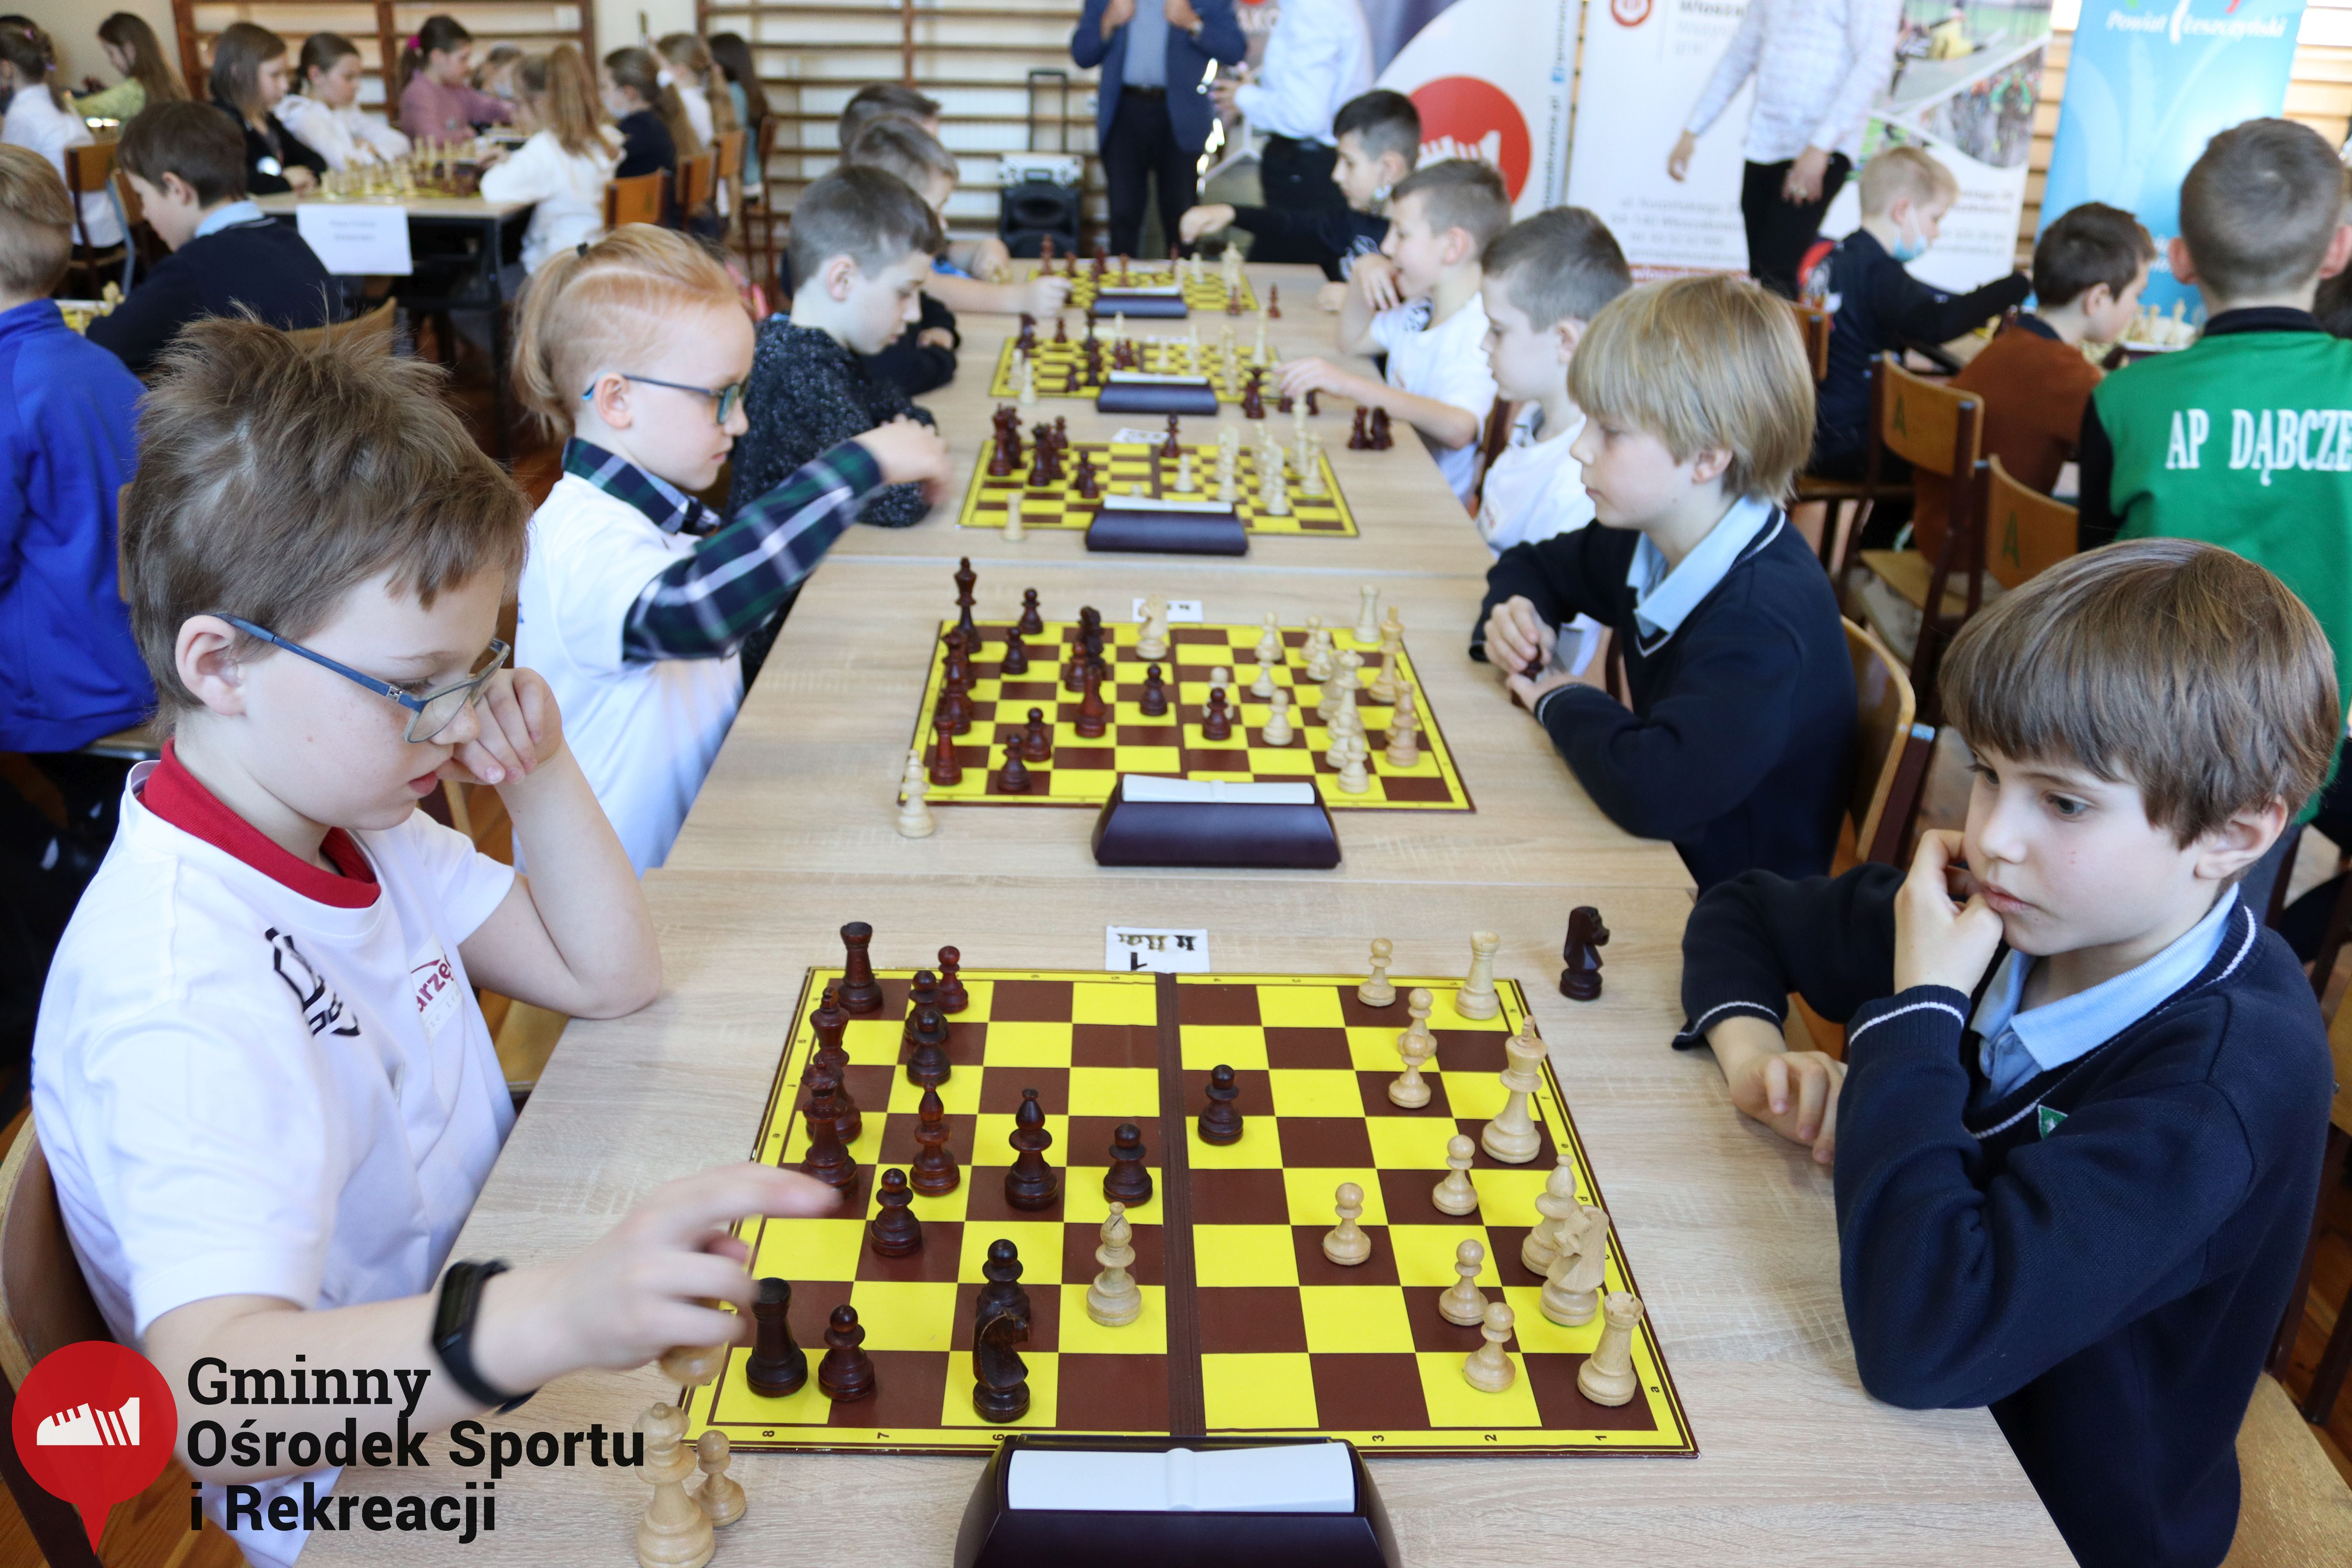 2022.03.12-13 Turniej szachowy - Edukacja przez Szachy033.jpg - 2,21 MB